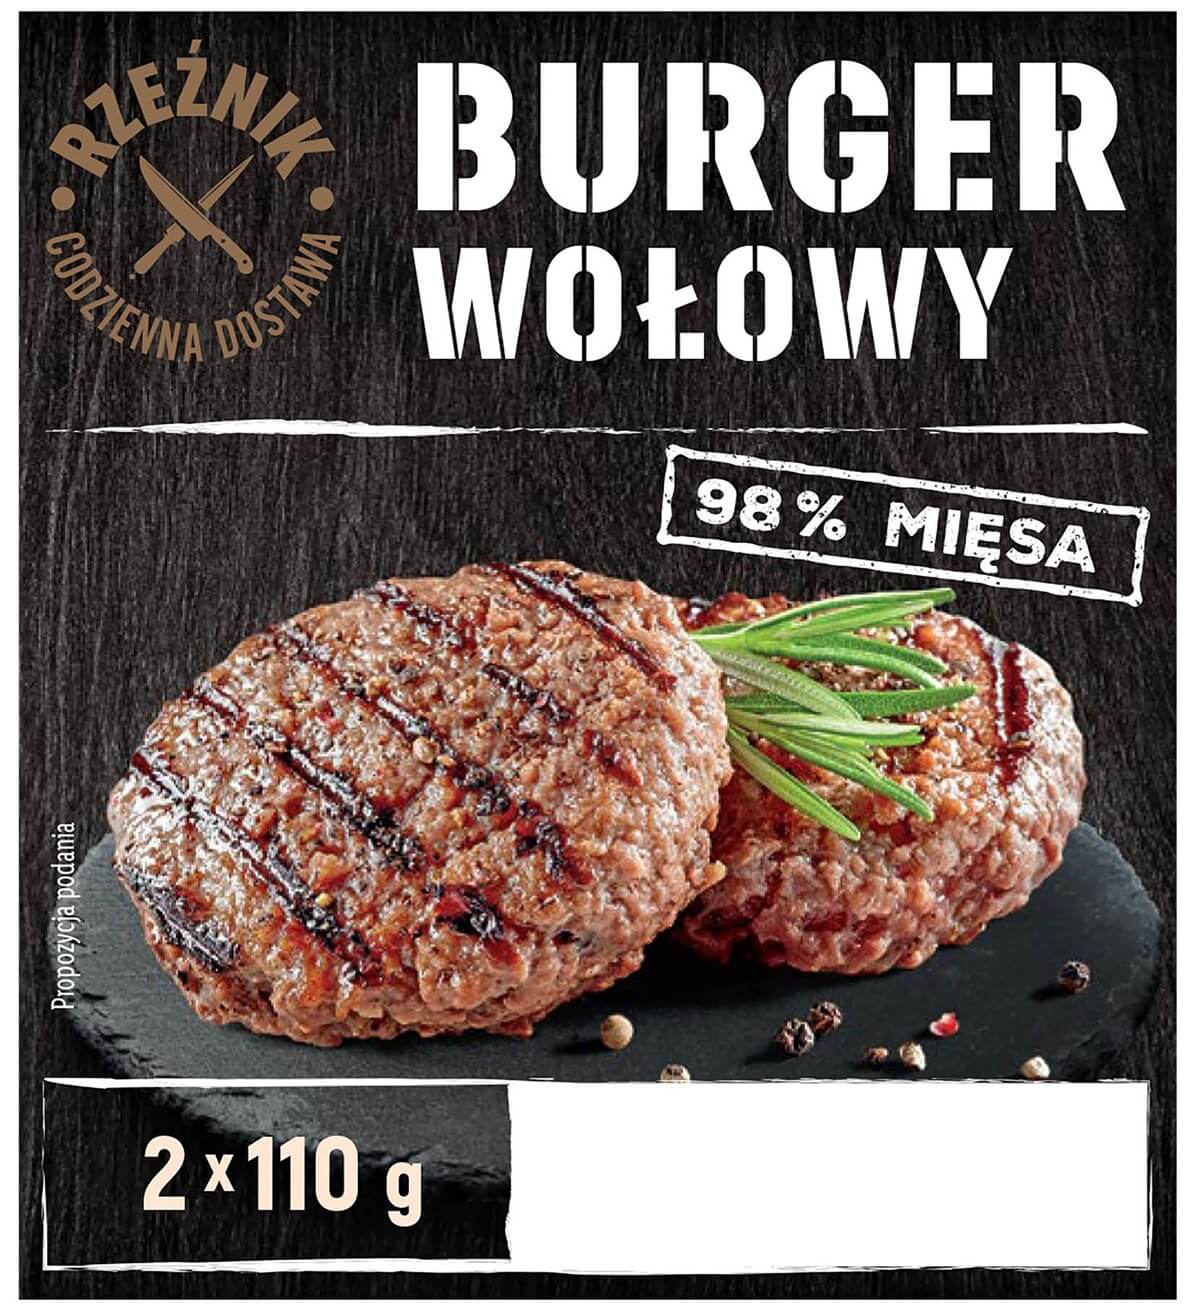 Burger Wołowy, Rzeźnik wycofany z Lidla